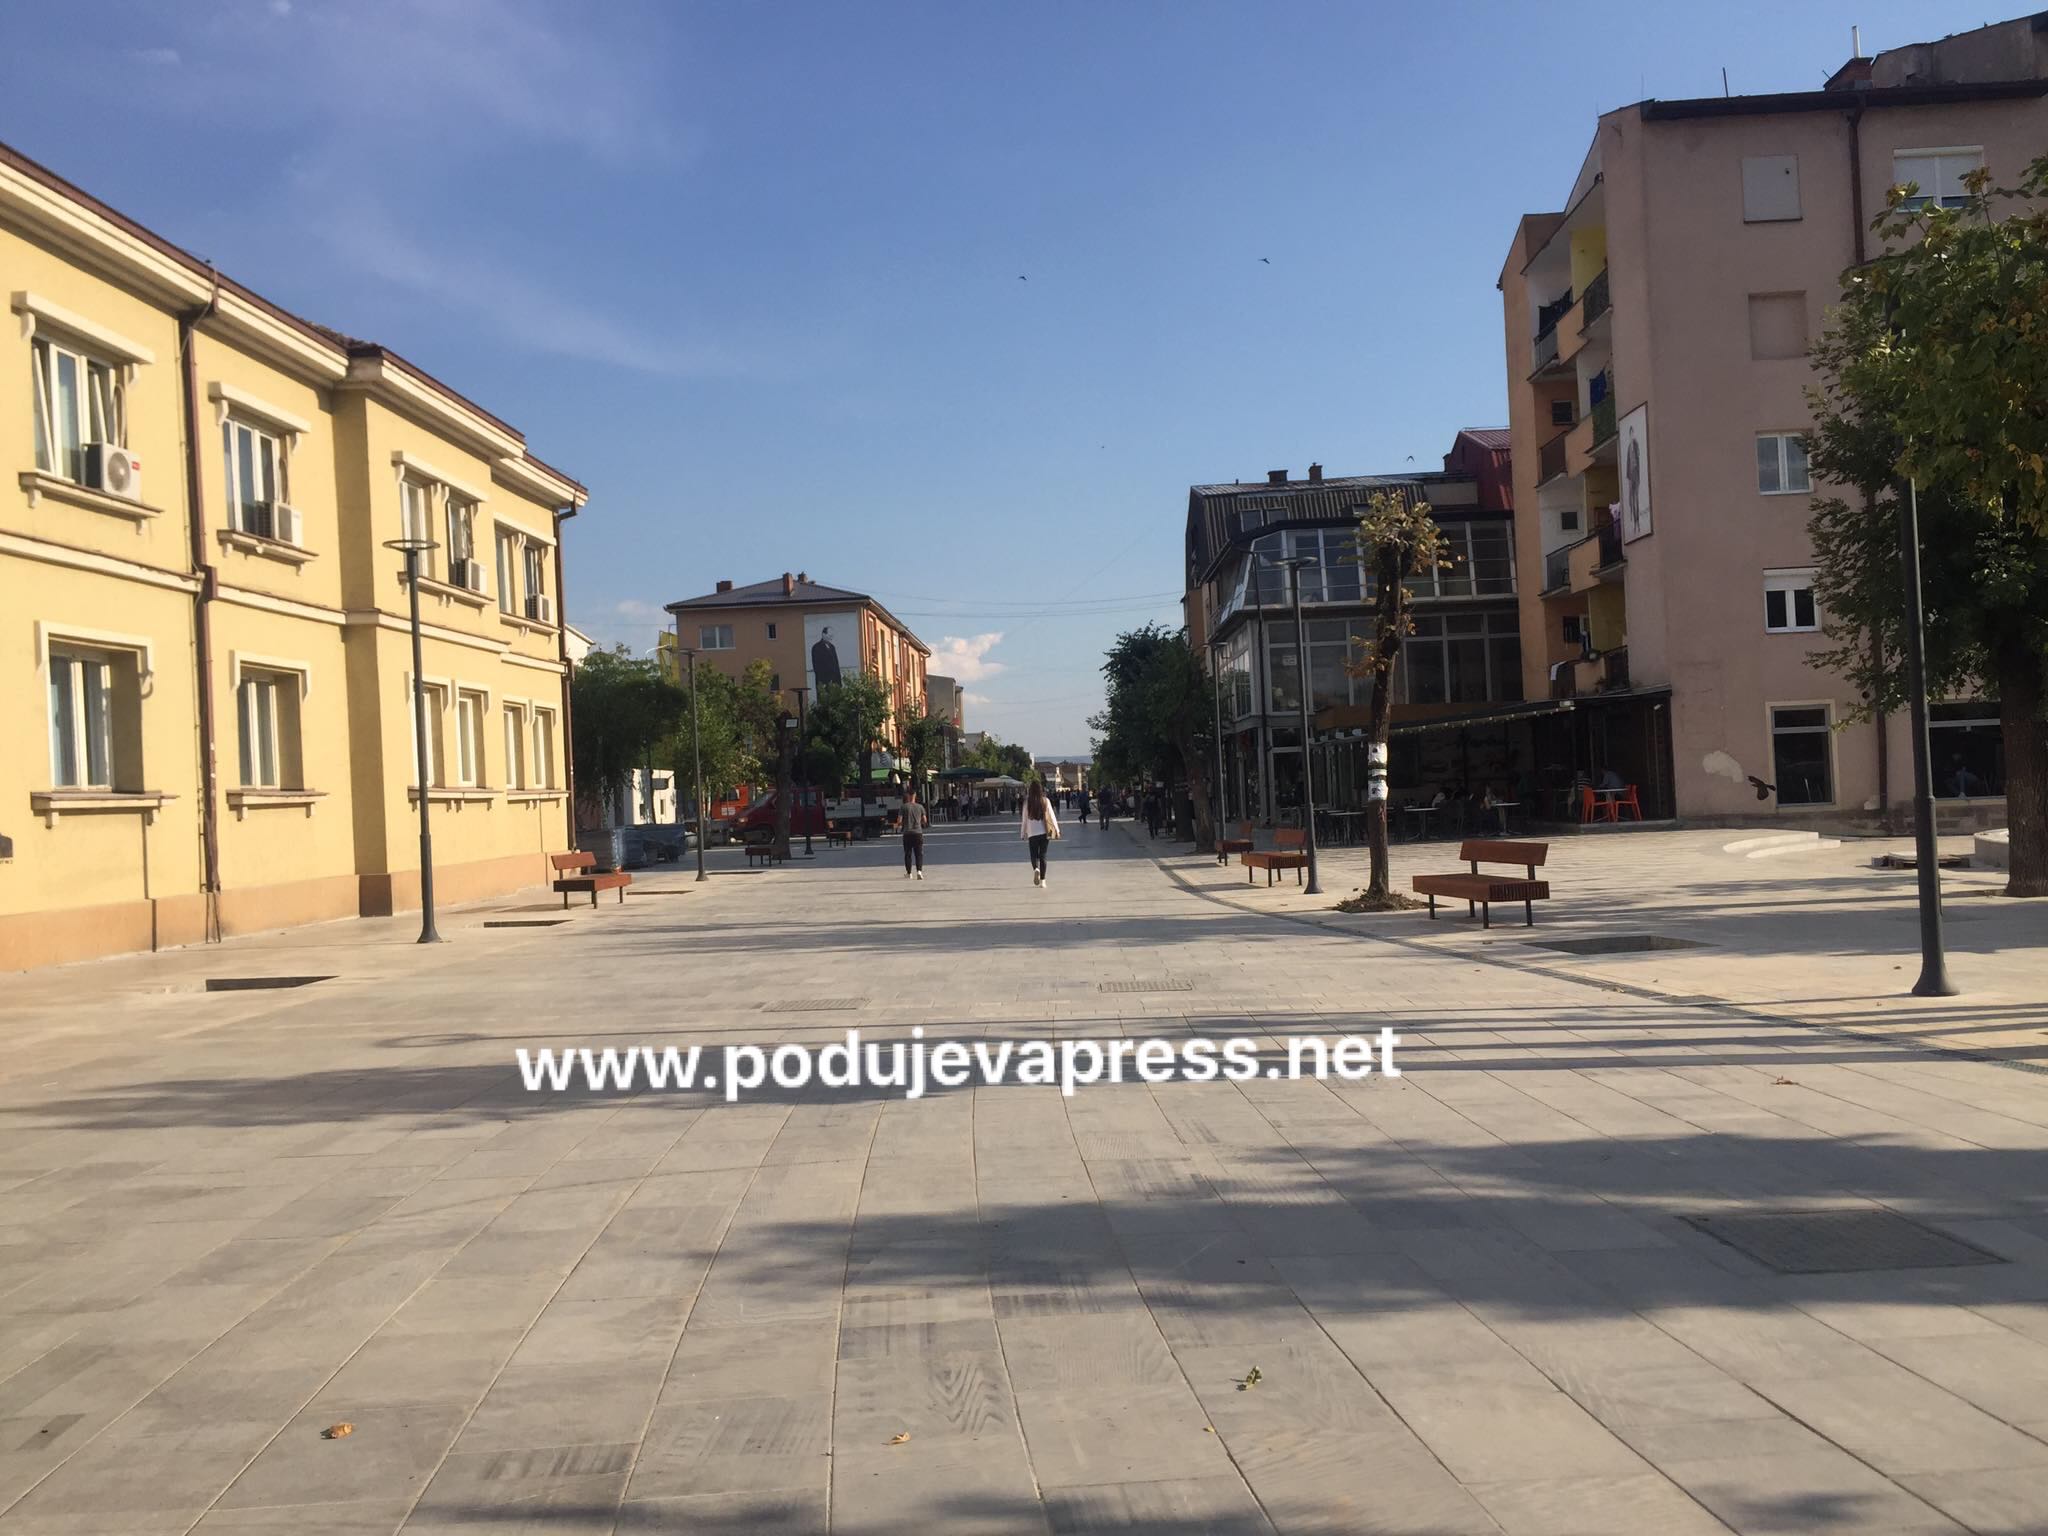  Komuna e Podujevës merr vendim për faljen e 3.8 milion euro borxhe të bizneseve lokale